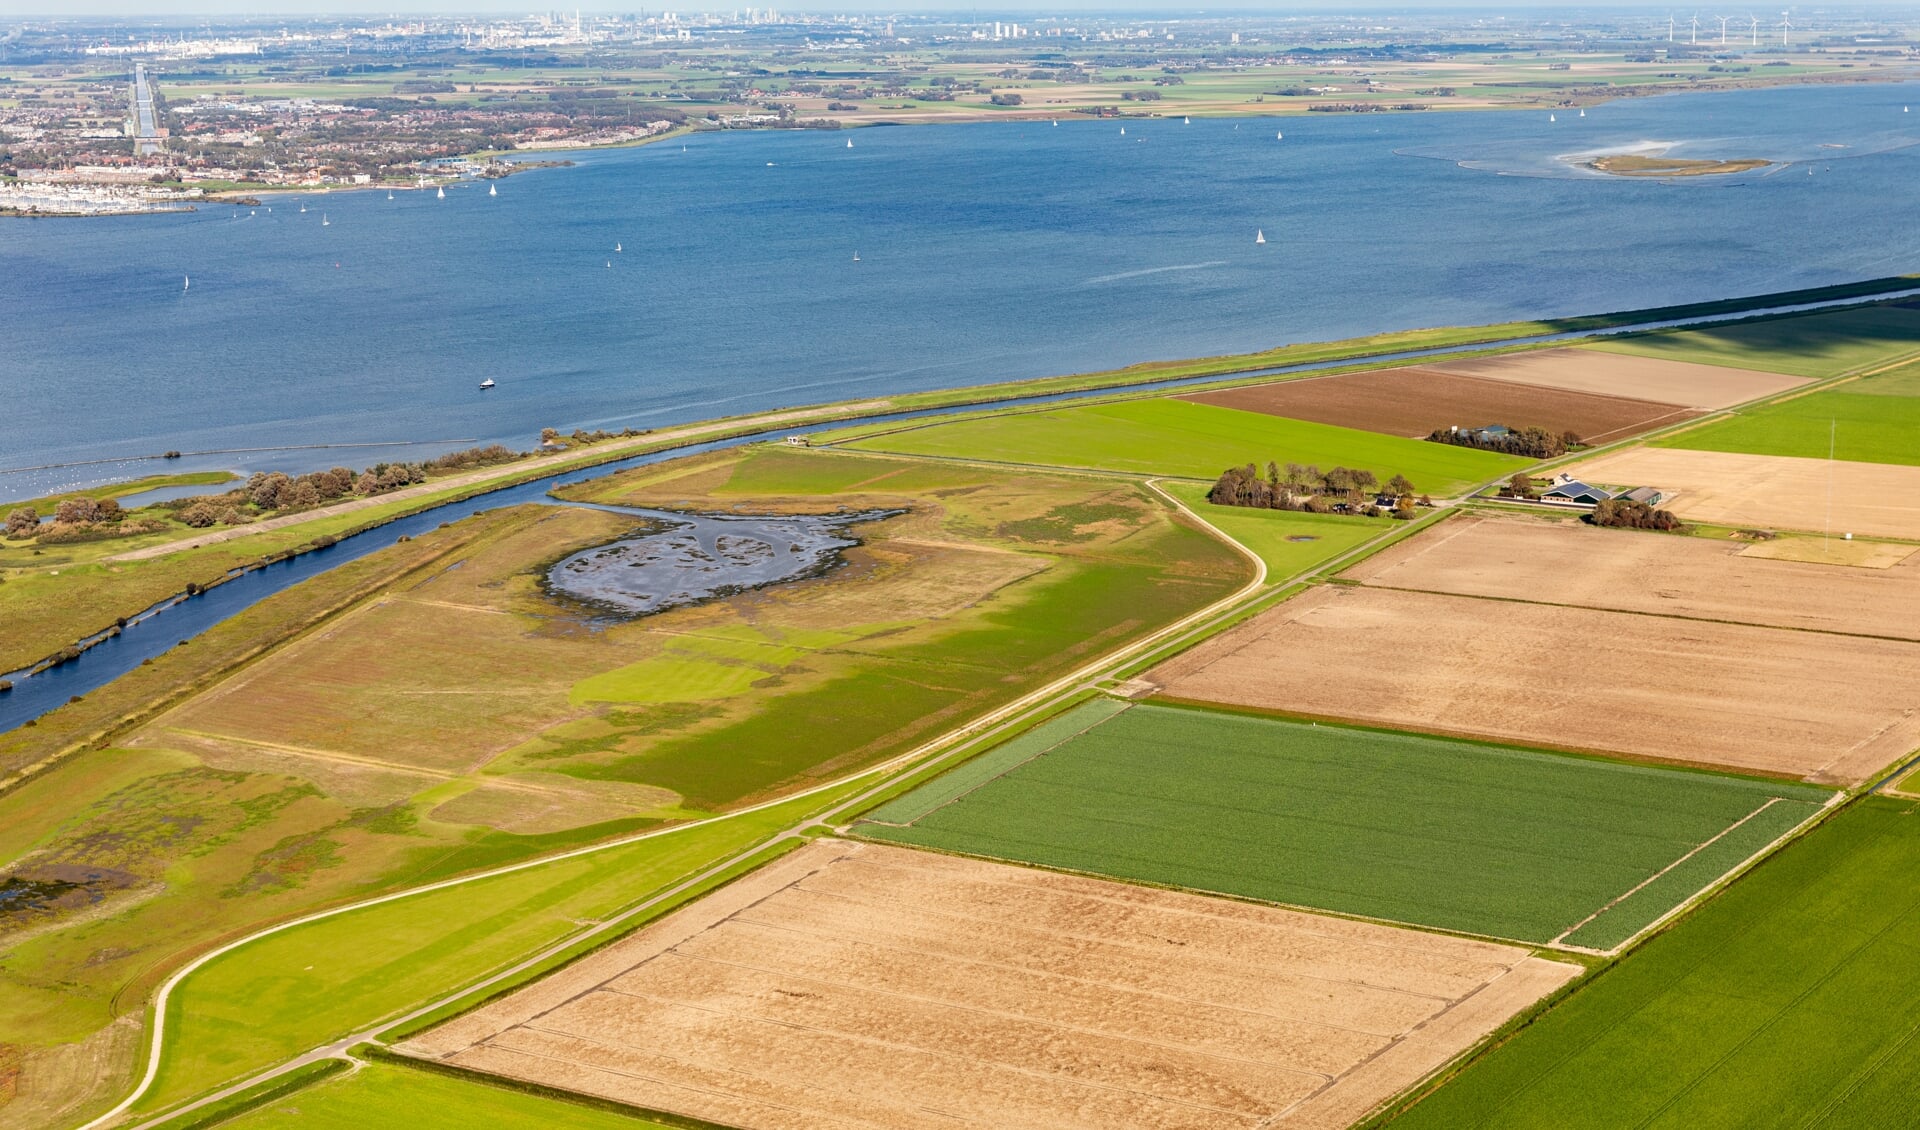 De VVD-waterschapsfractie vindt dat natuur en economie goed samen kunnen gaan. (Foto: Topview Luchtfotografie)